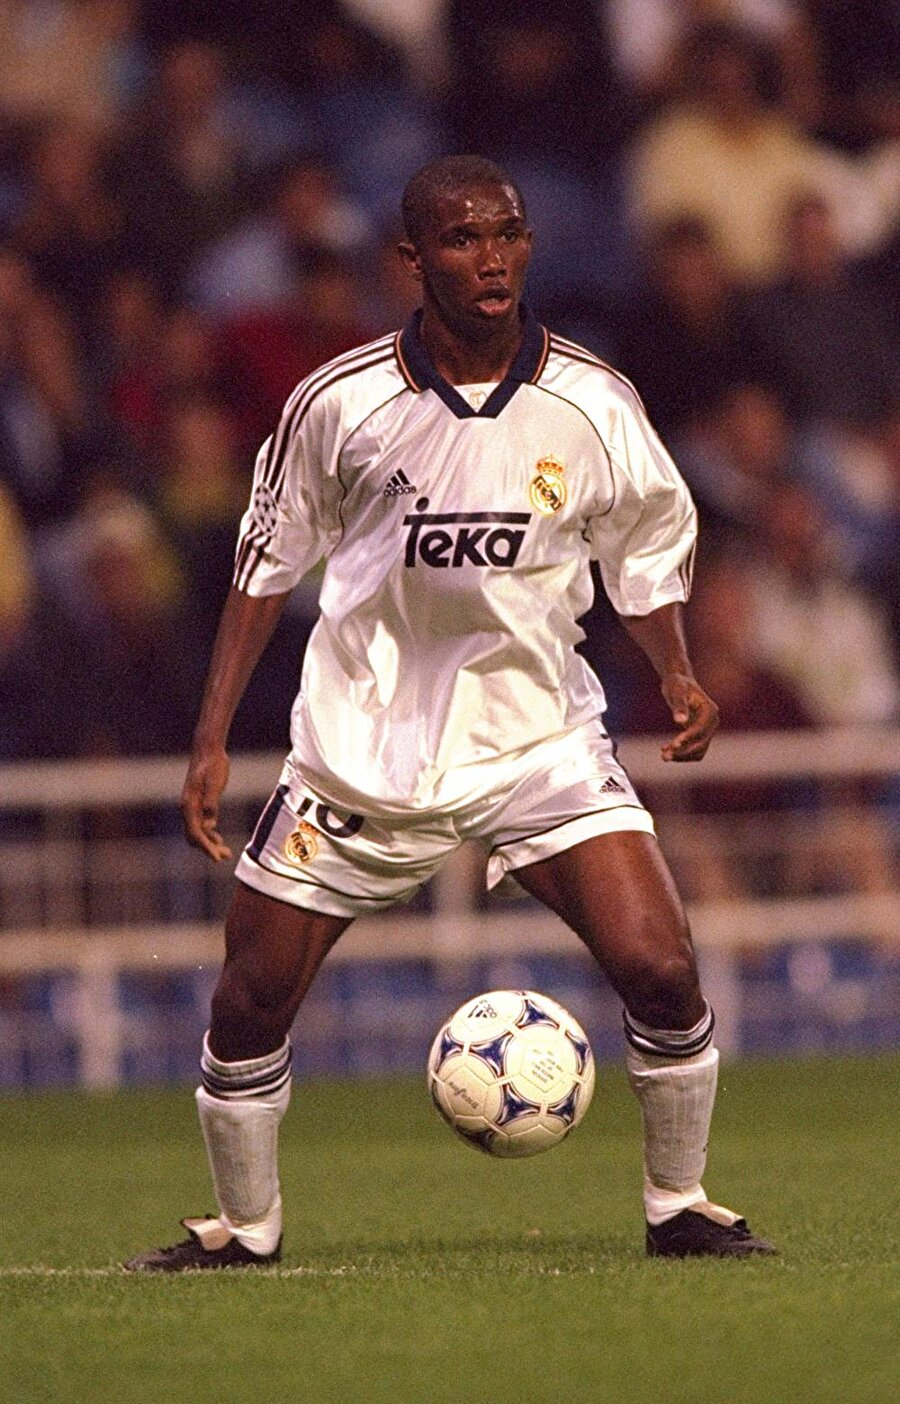 Dikkat çekmeye başladı
İspanyol devinin rezerv takımı olan Real Madrid Castilla'da sergilediği başarılı performansla dikkat çeken Eto'o, 1998-1999 sezonunda Real Madrid'e geçti.